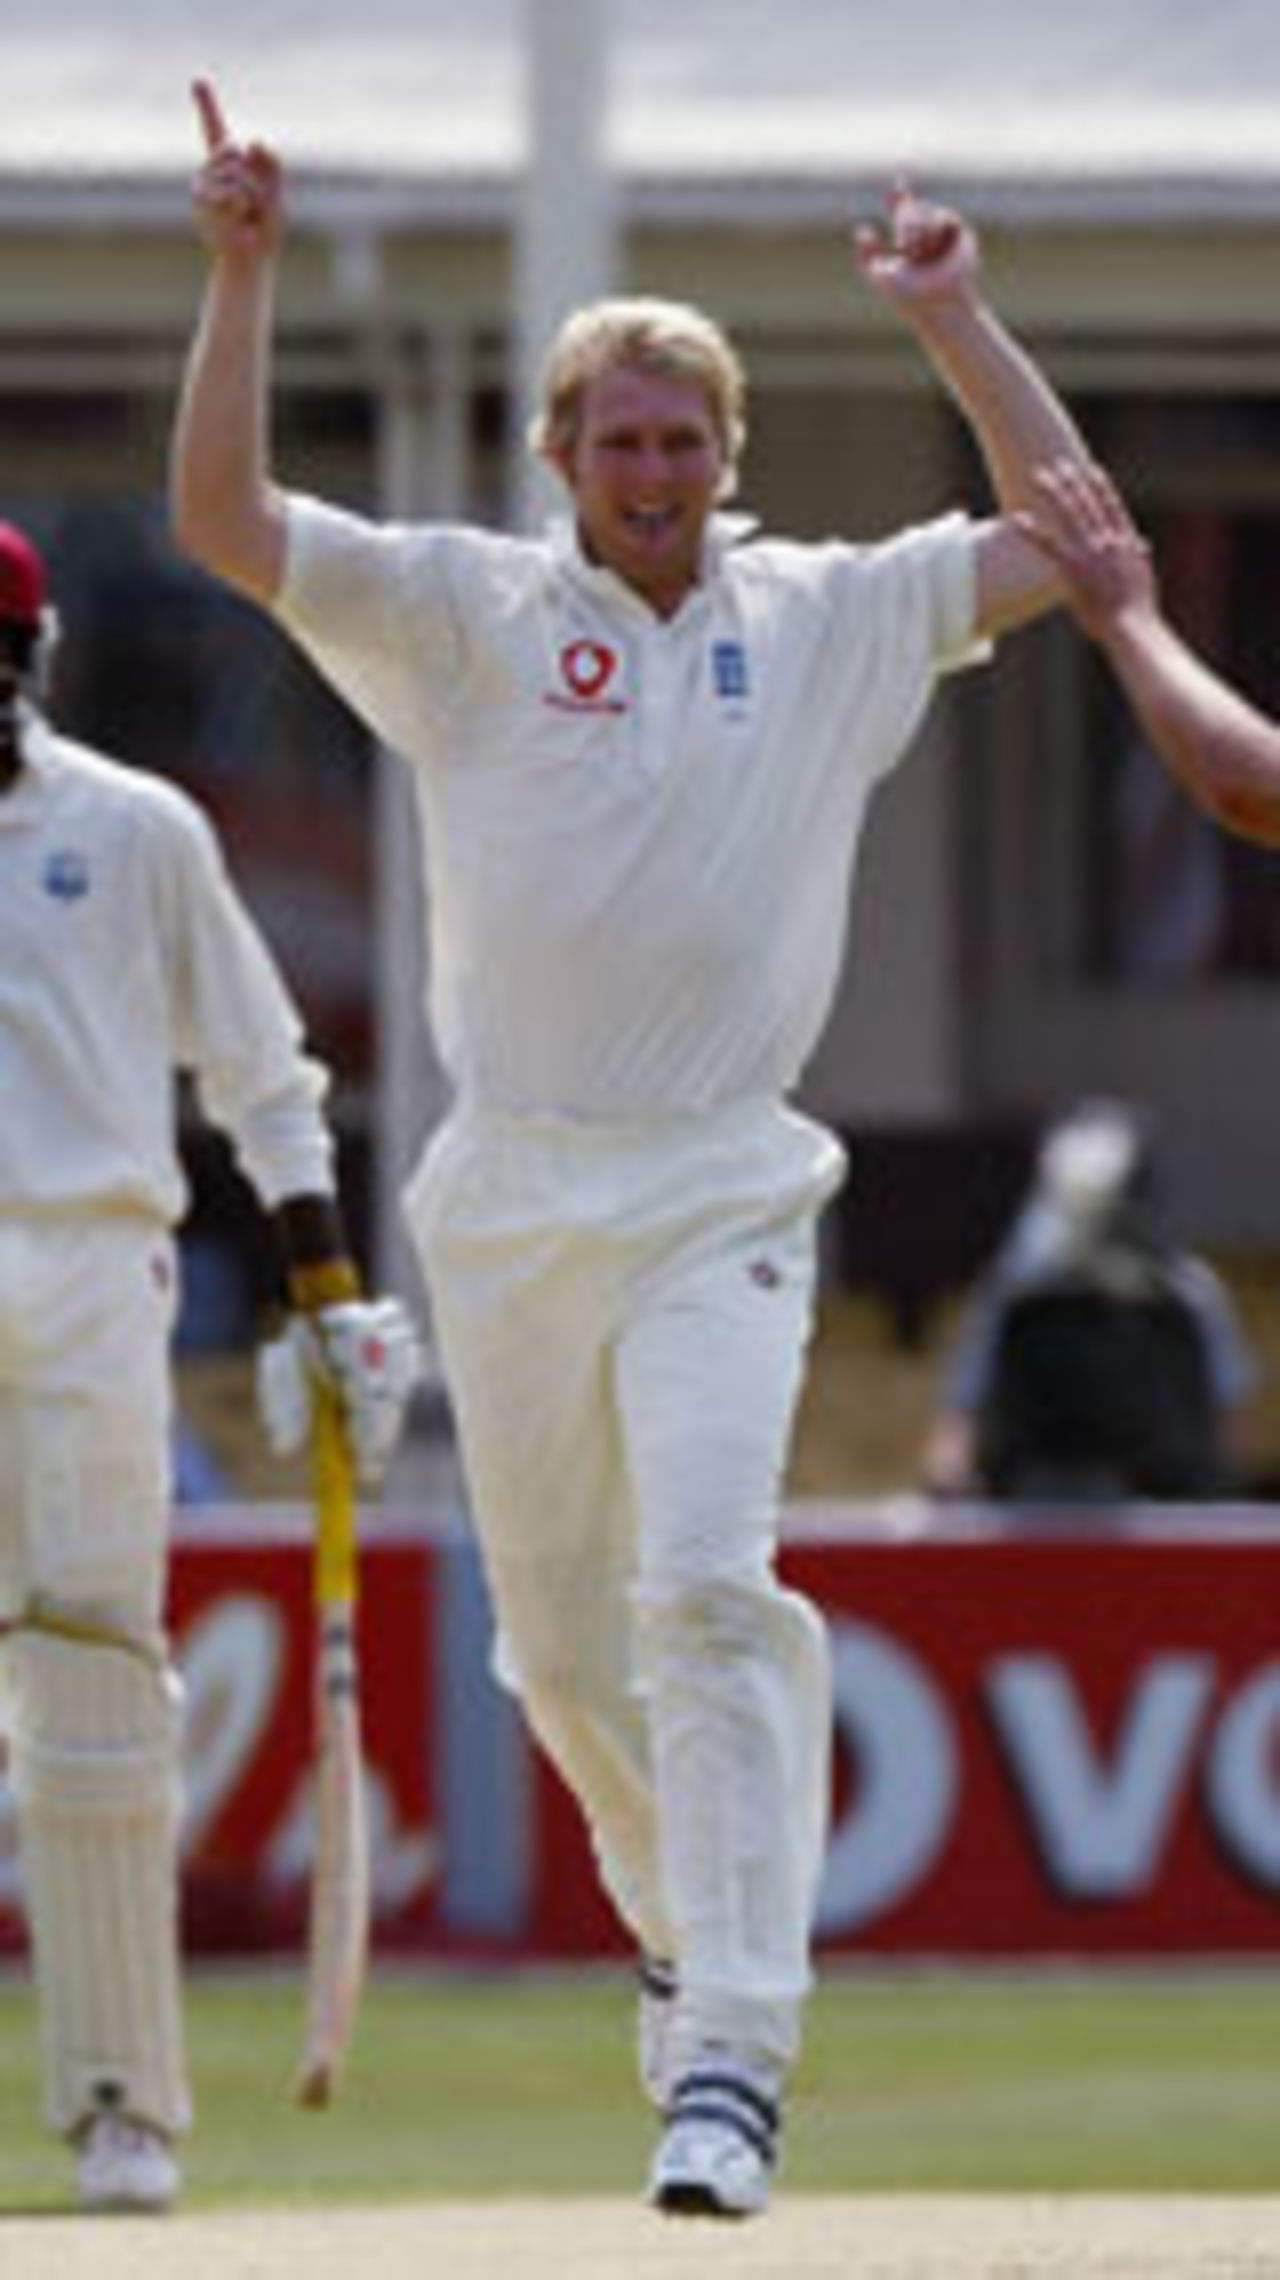 Matthew Hoggard celebrates the wicket of Devon Smith, England v West Indies, 2nd Test, Edgbaston, August 1, 2004